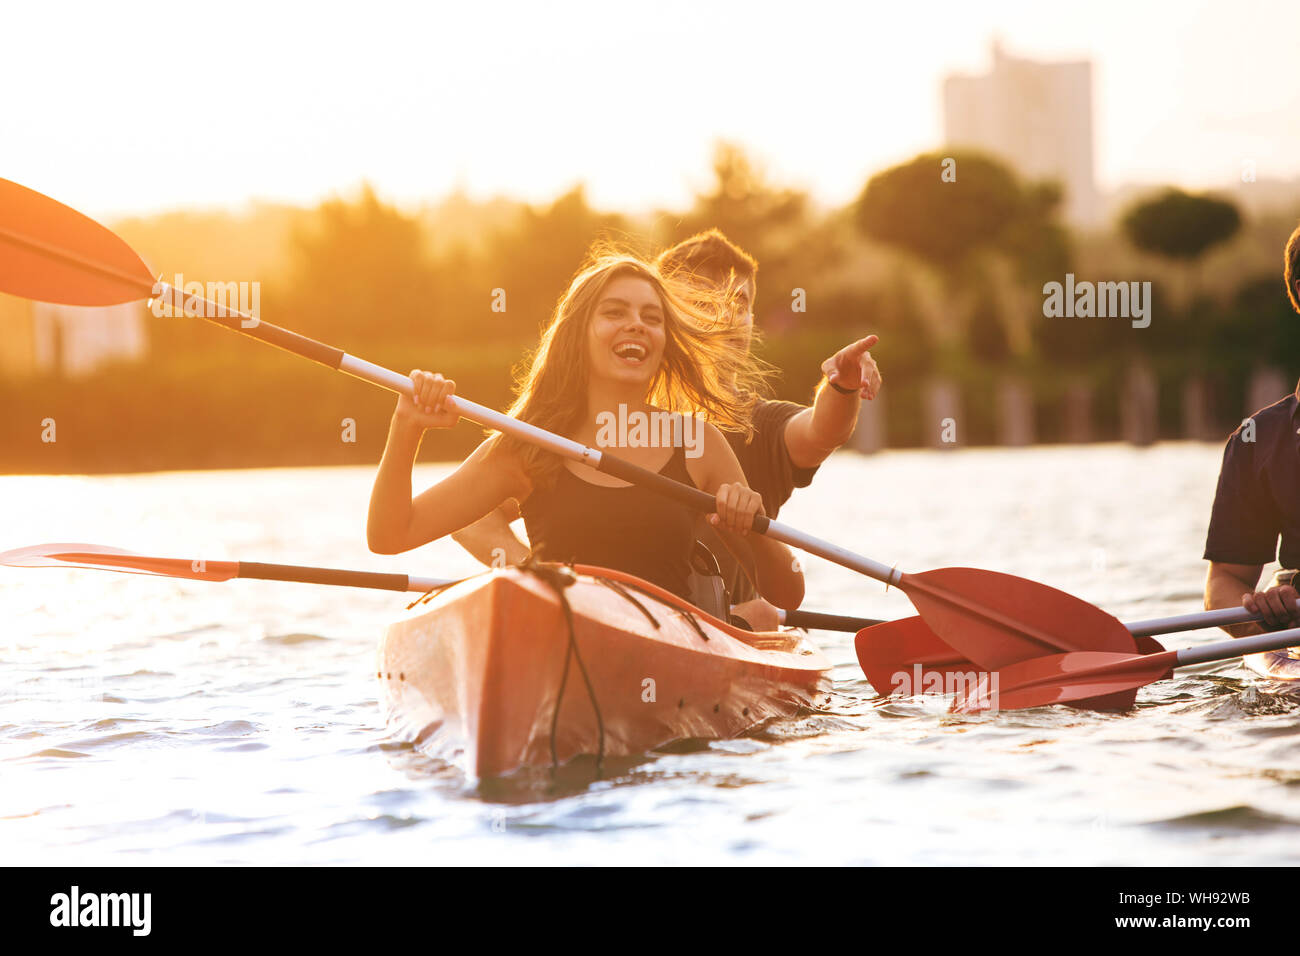 Selbstbewussten jungen kaukasischen Paar Kajakfahren auf dem Fluss zusammen mit Sonnenuntergang im Hintergrund. Spaß in der Freizeit. Romantisch und glückliche Frau und Mann auf dem Kajak. Sport, Beziehungen Konzept. Stockfoto